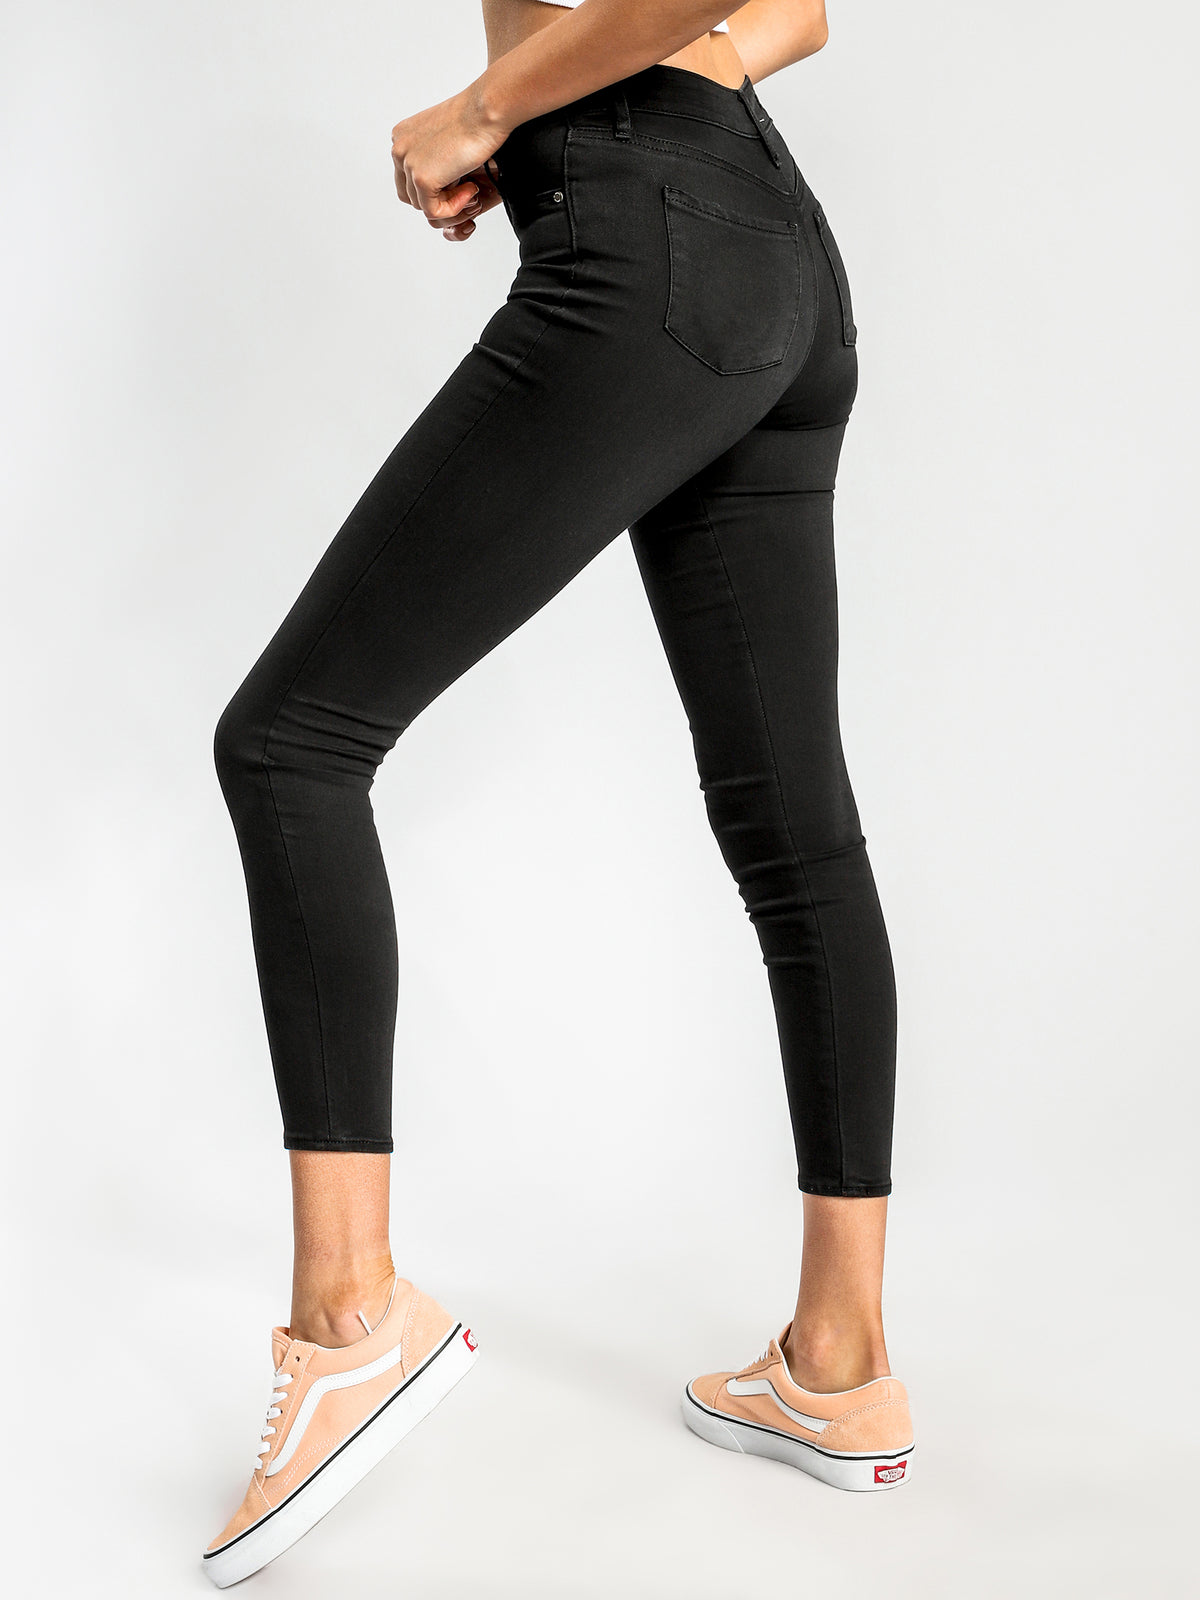 Cisco High-Rise Super-Skinny Jeans in Black-Out Denim